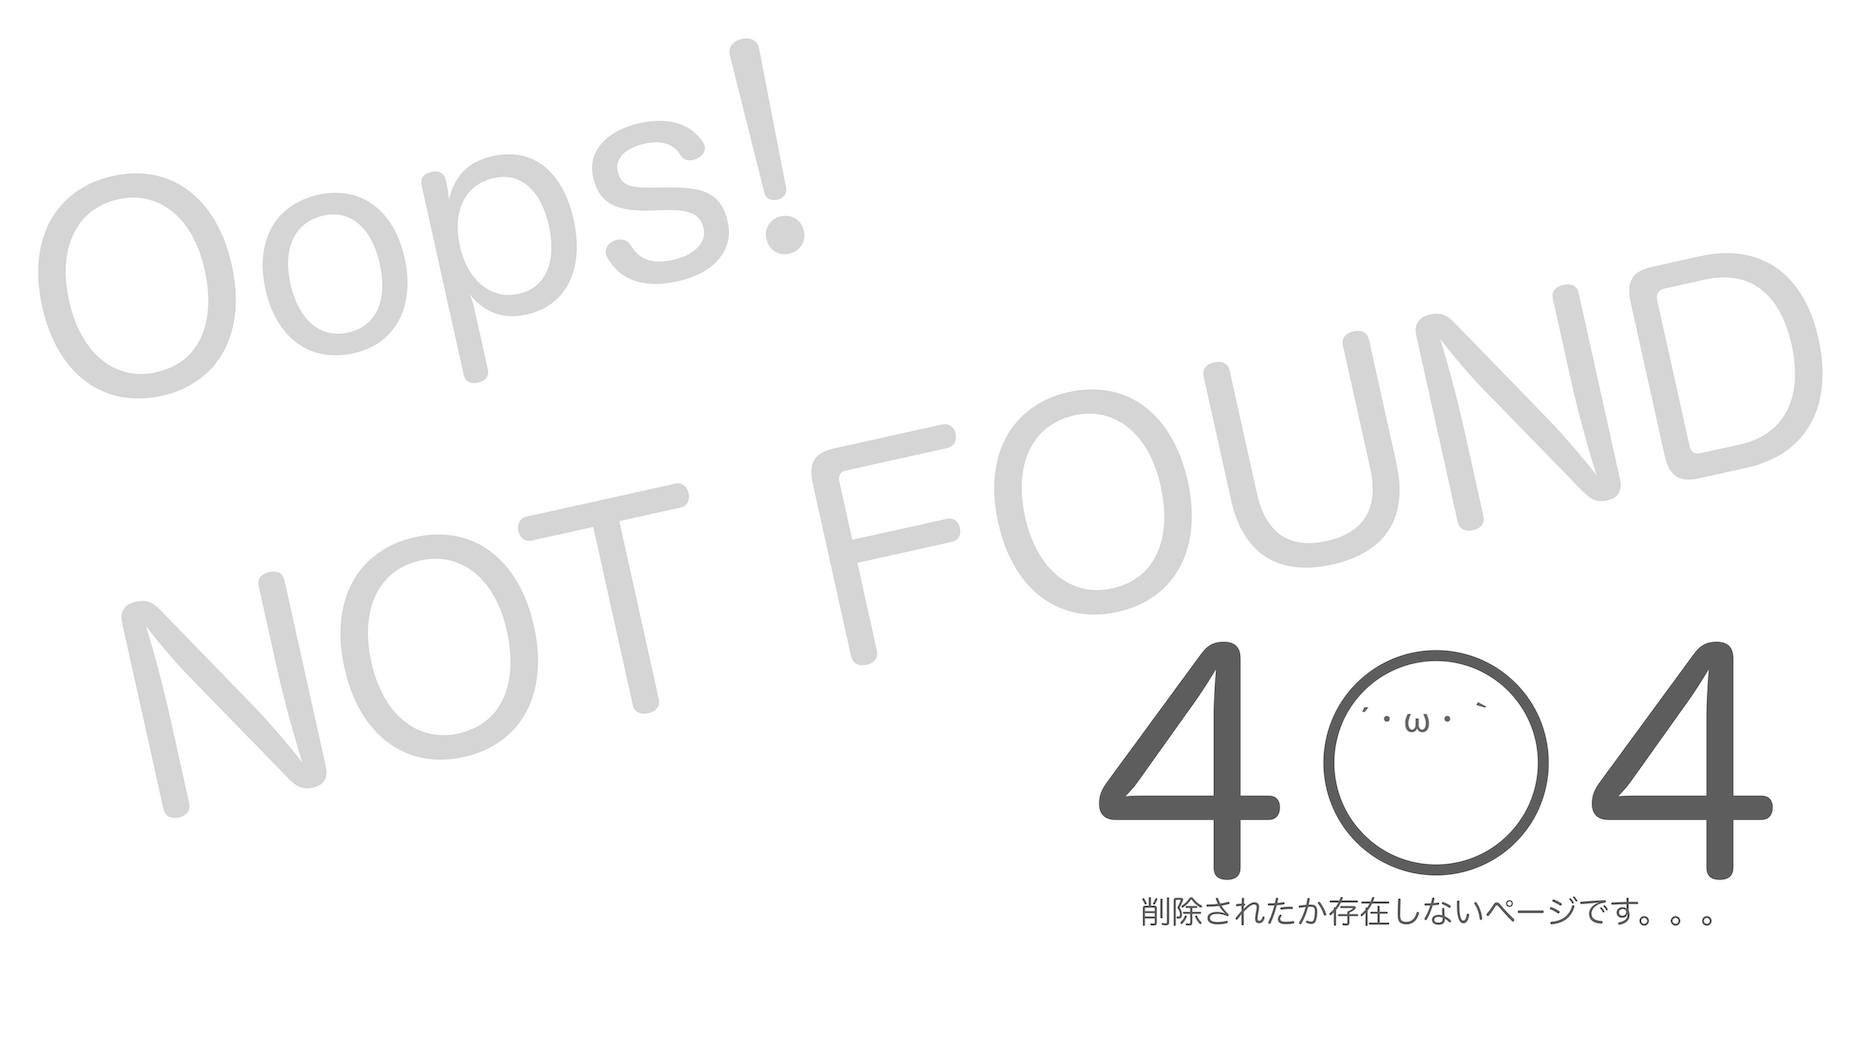 404page_腹筋崩壊ニュース